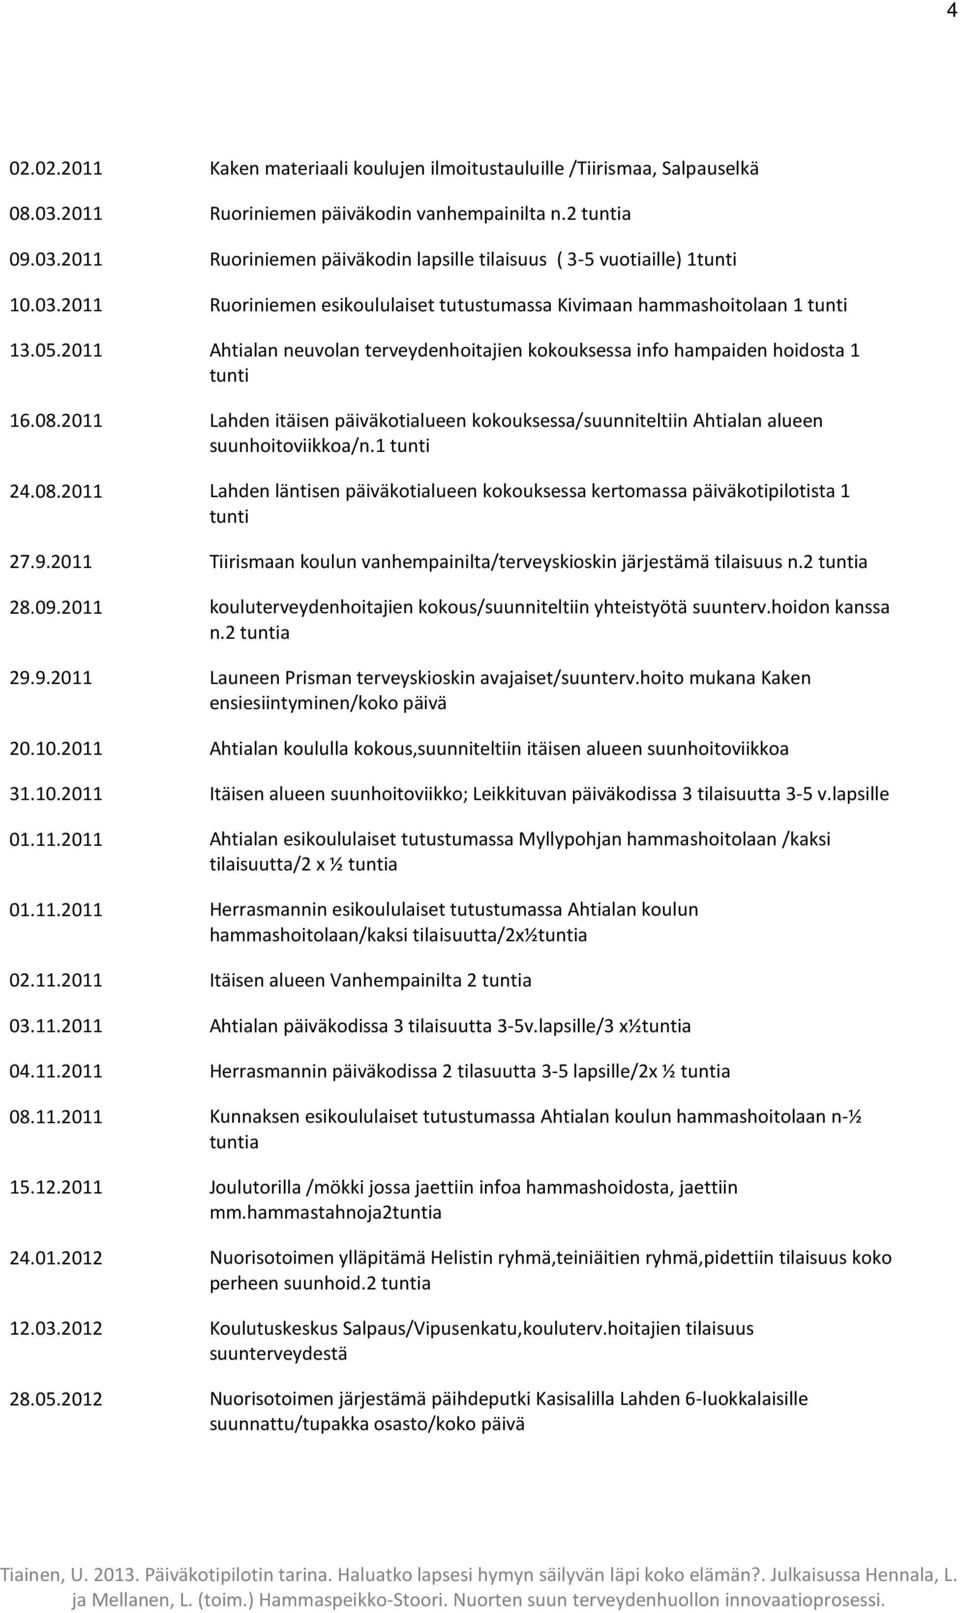 2011 Lahden itäisen päiväkotialueen kokouksessa/suunniteltiin Ahtialan alueen suunhoitoviikkoa/n.1 tunti 24.08.